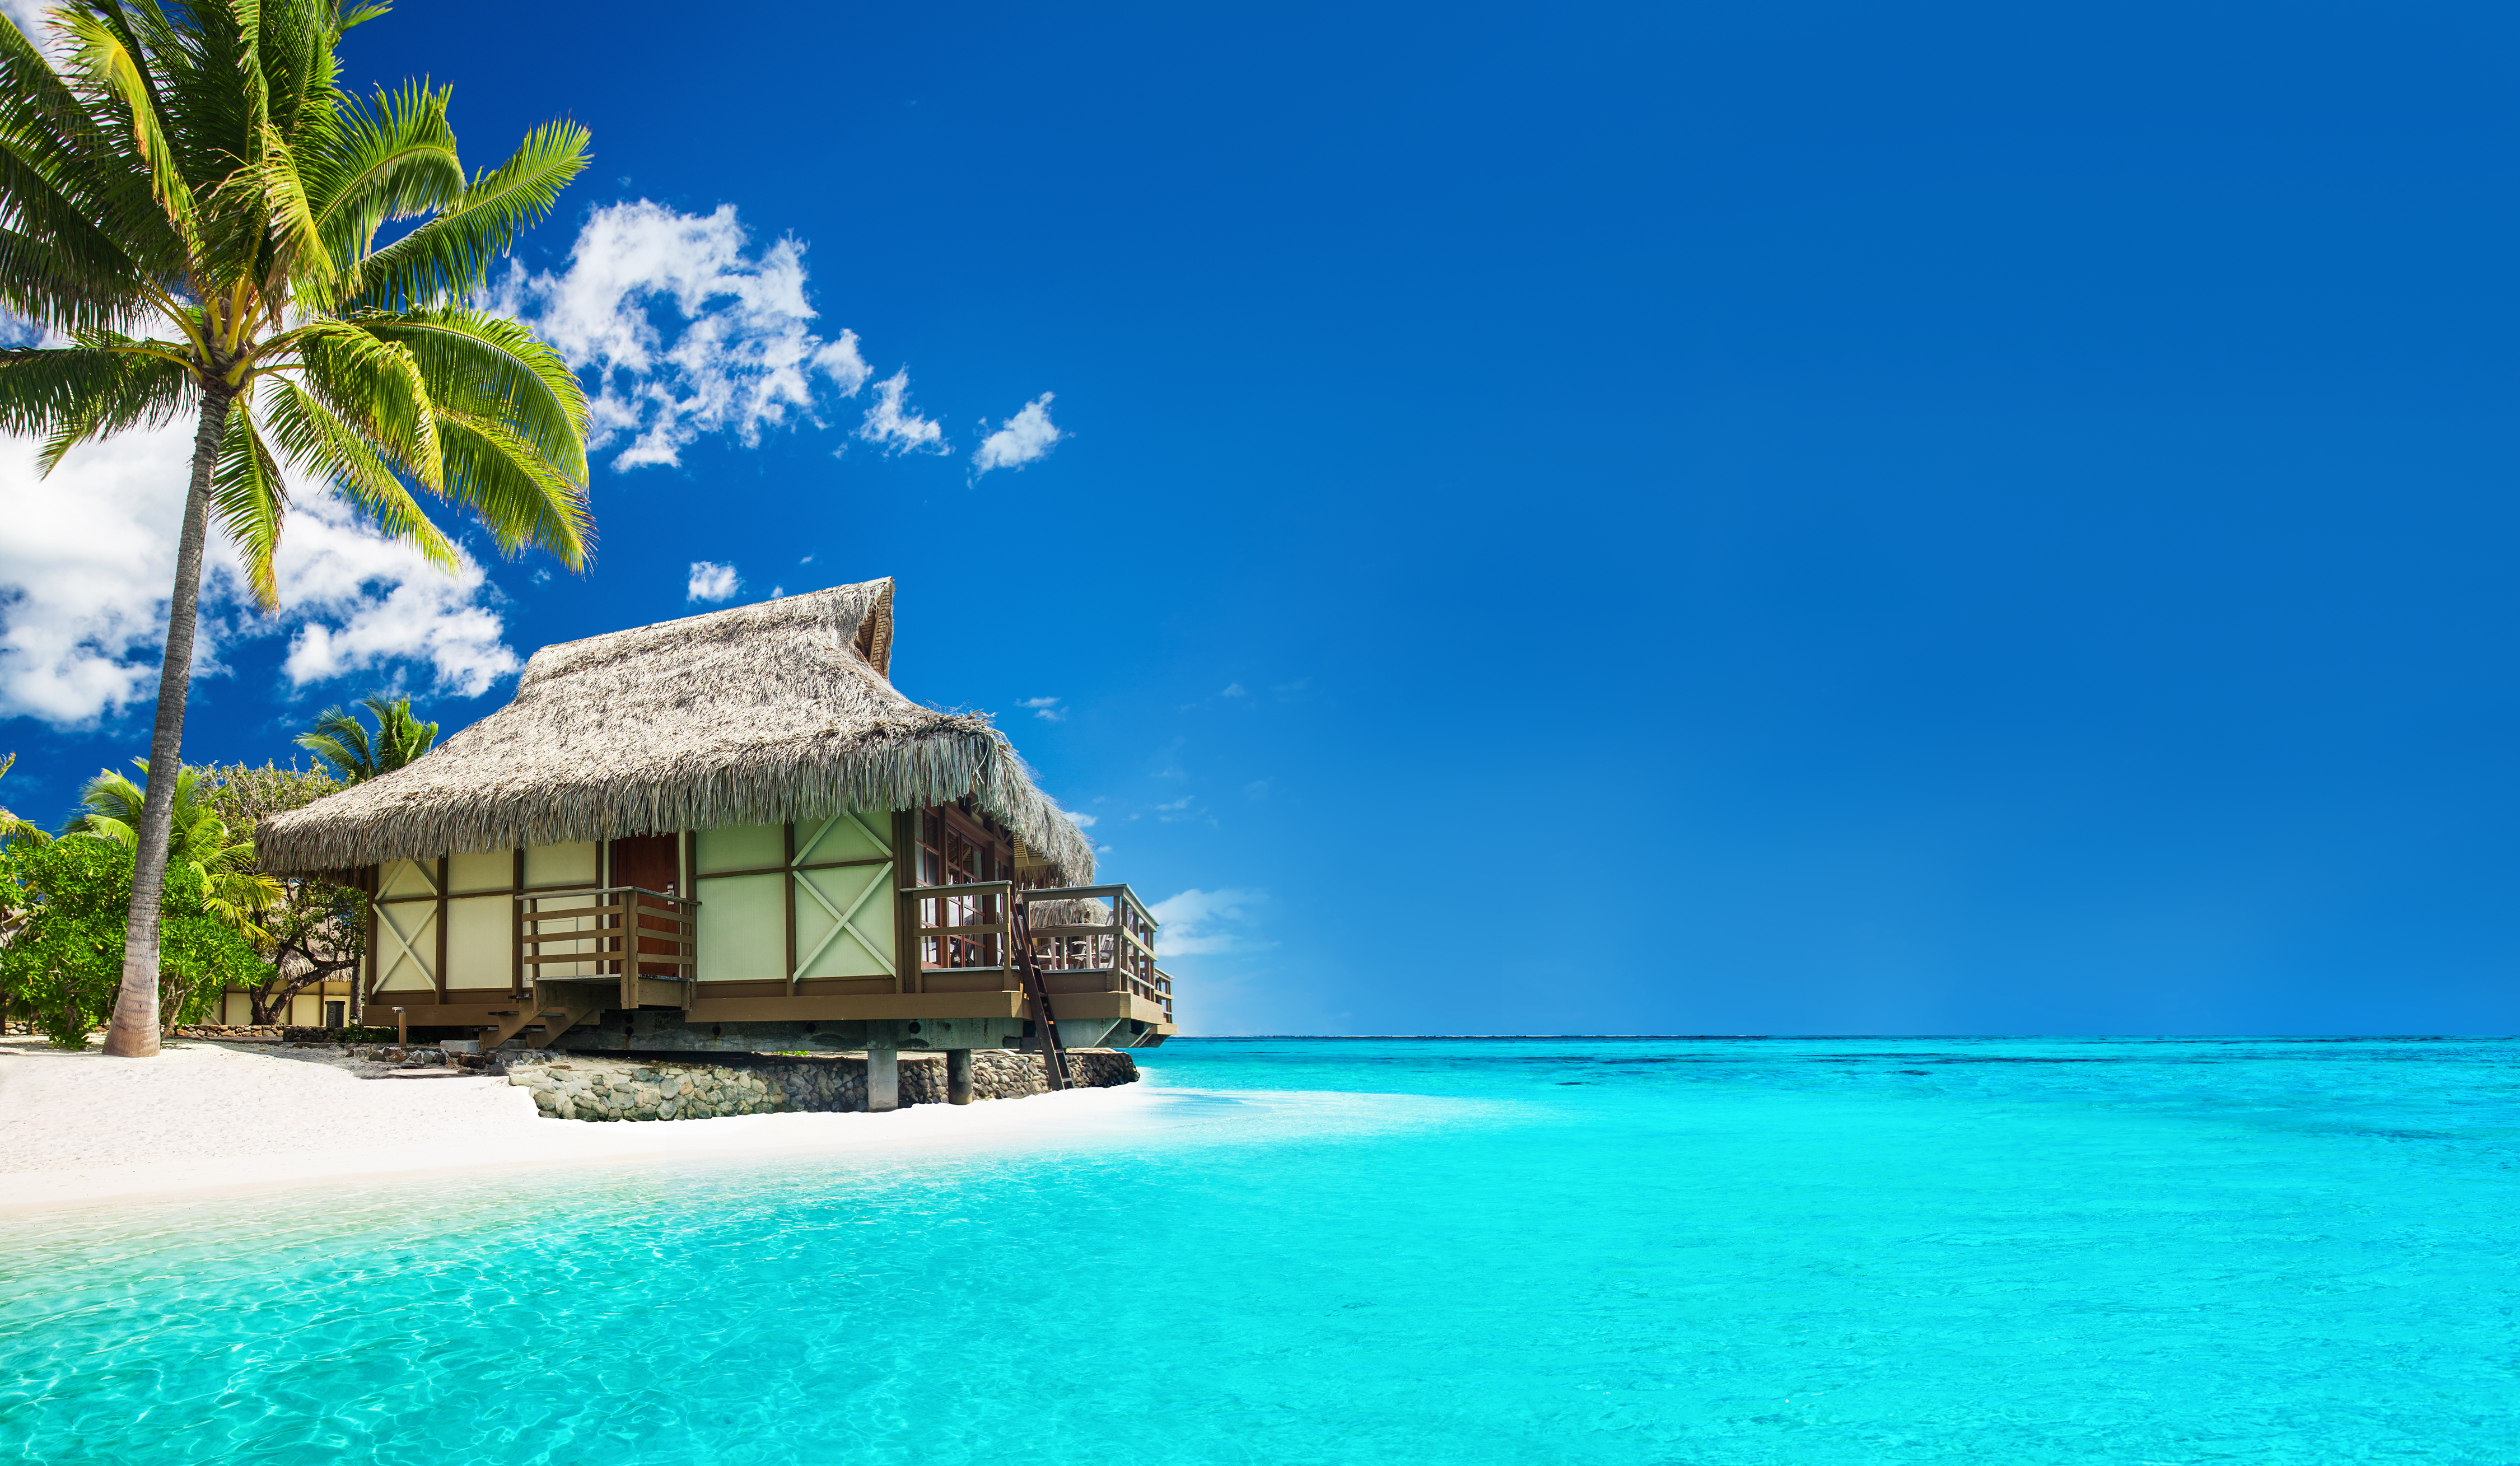 Bungalow tropical en la playa | Foto: Shutterstock